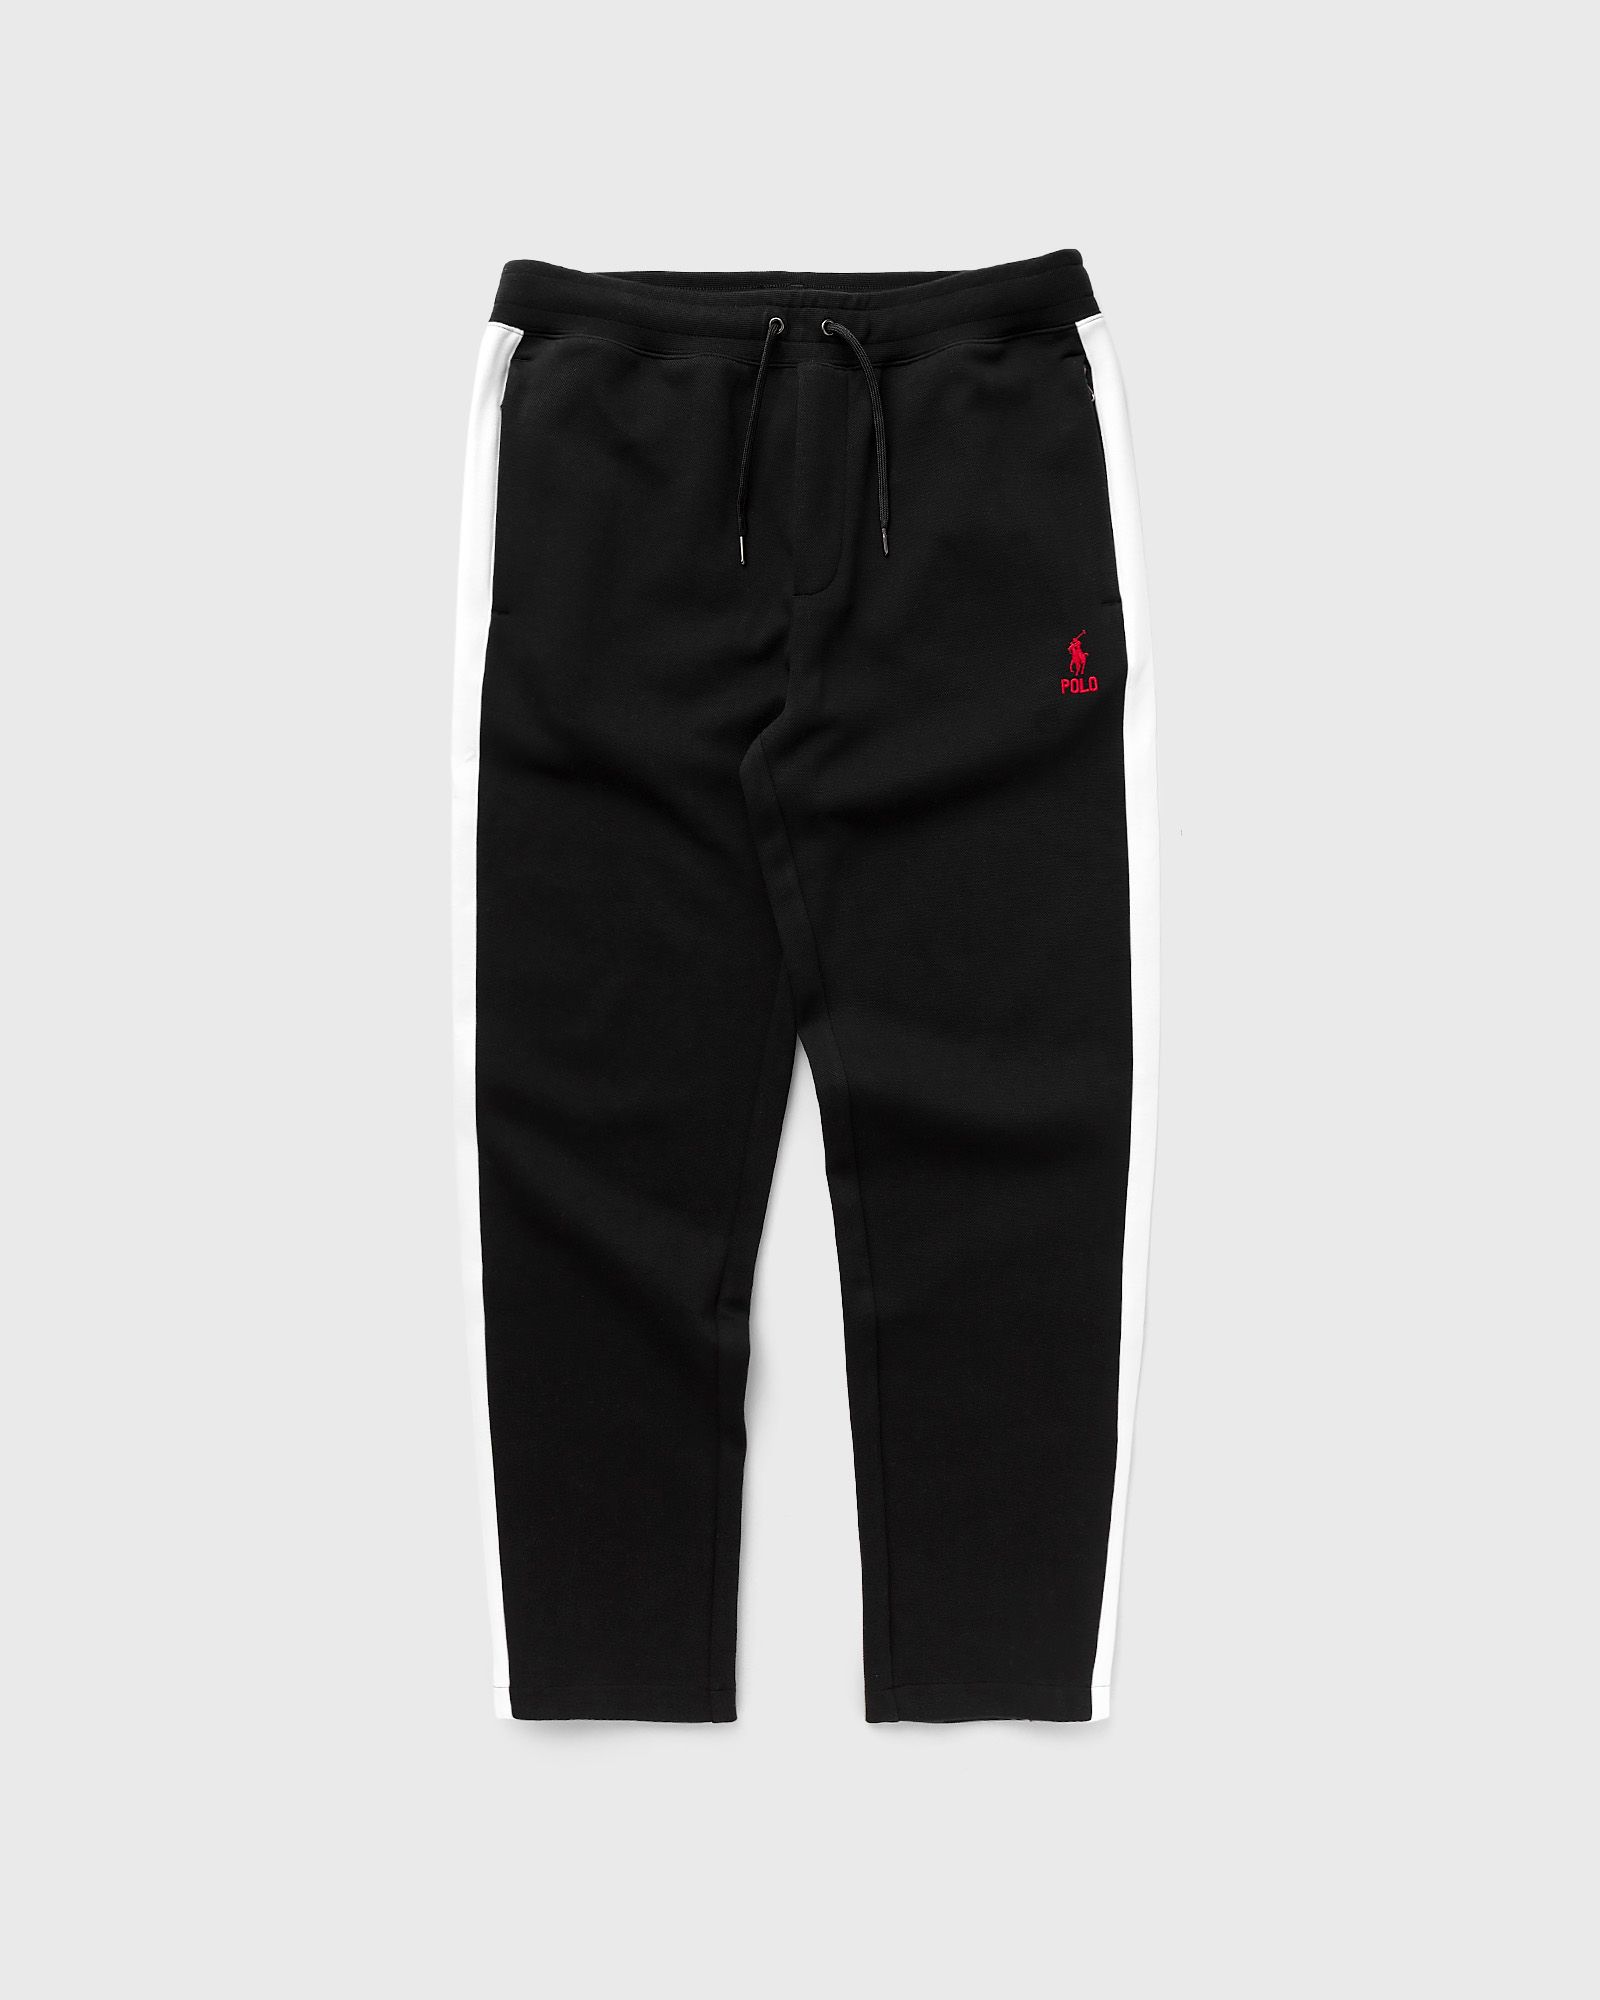 Polo Ralph Lauren - athletic sweatpants men casual pants black in größe:xl